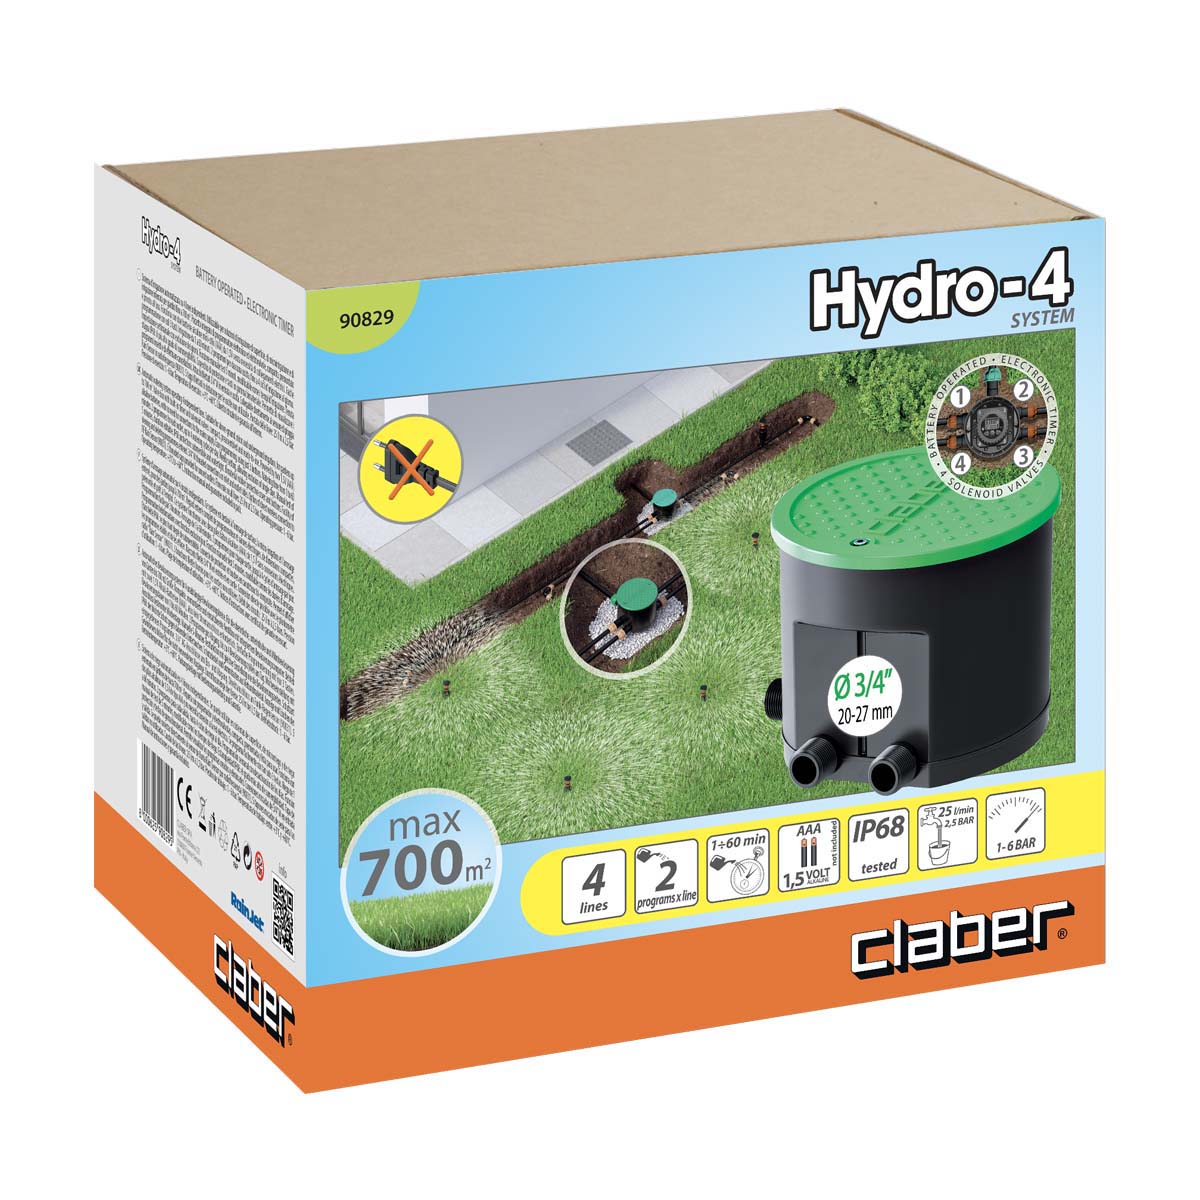 4 Scatola Valvole con timer programmabile Irrigazione Elettrovalvola box CLABER Hydro 